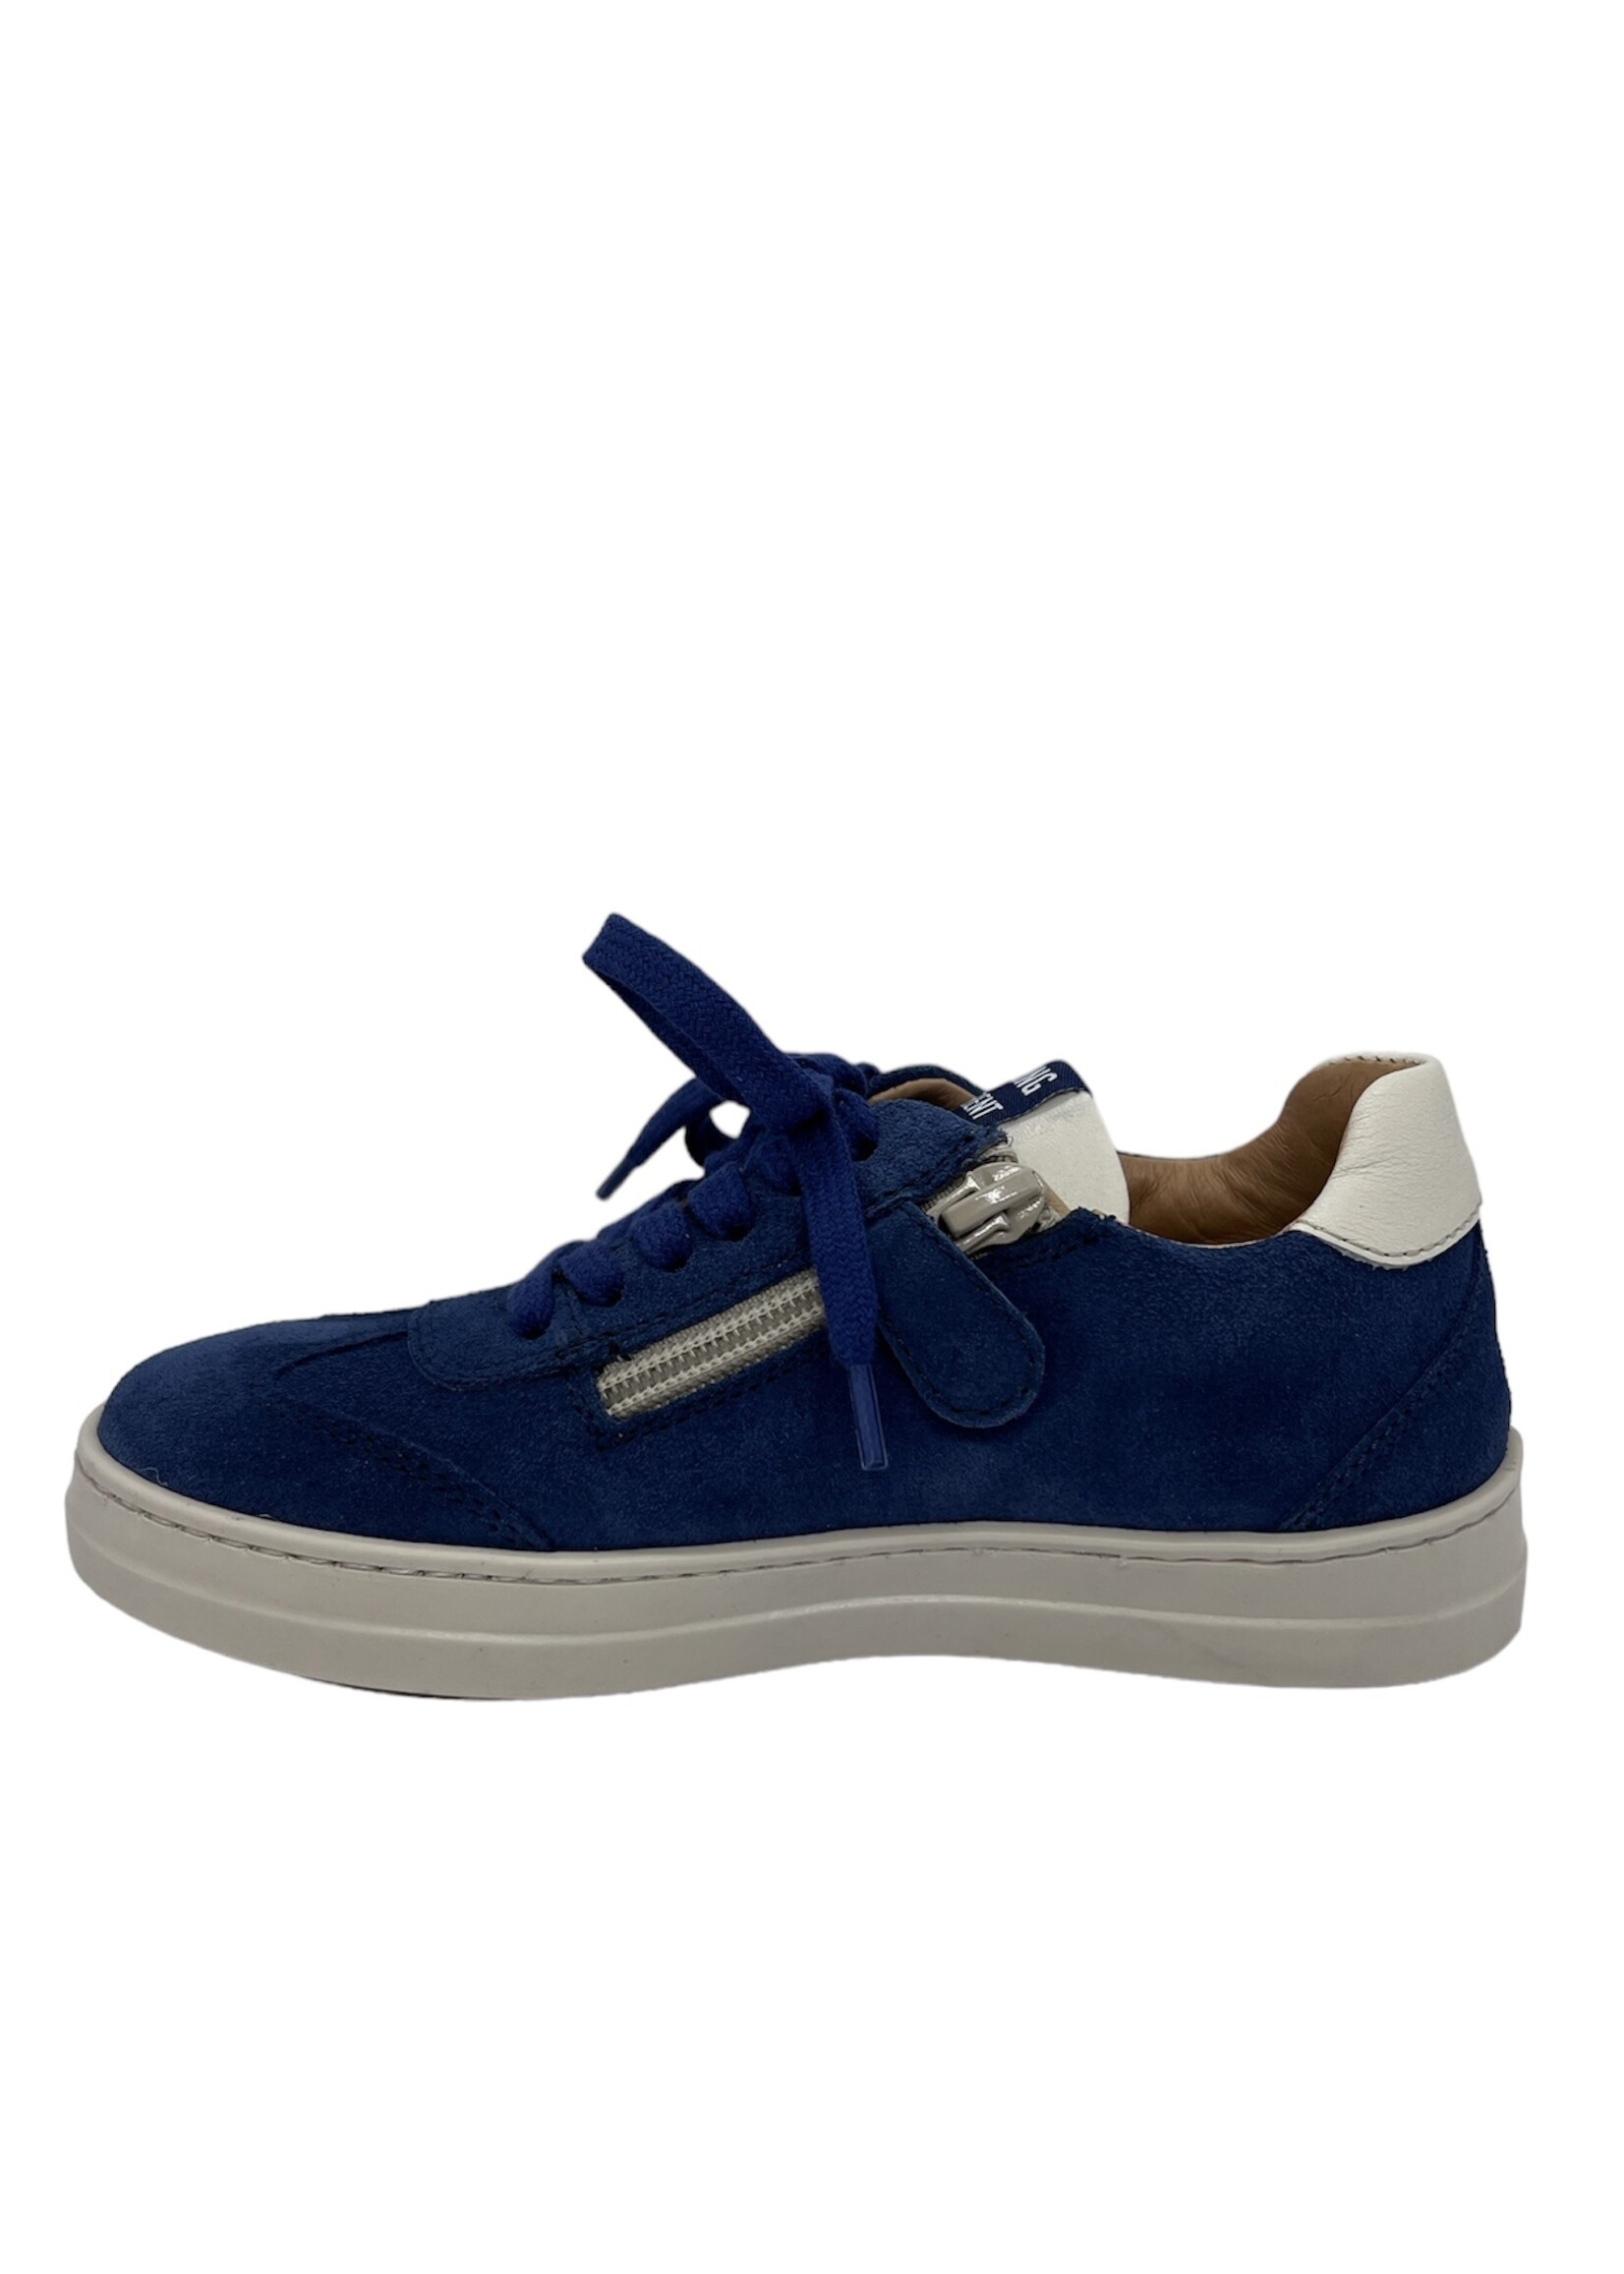 Romagnoli 4614 sneaker velour blue